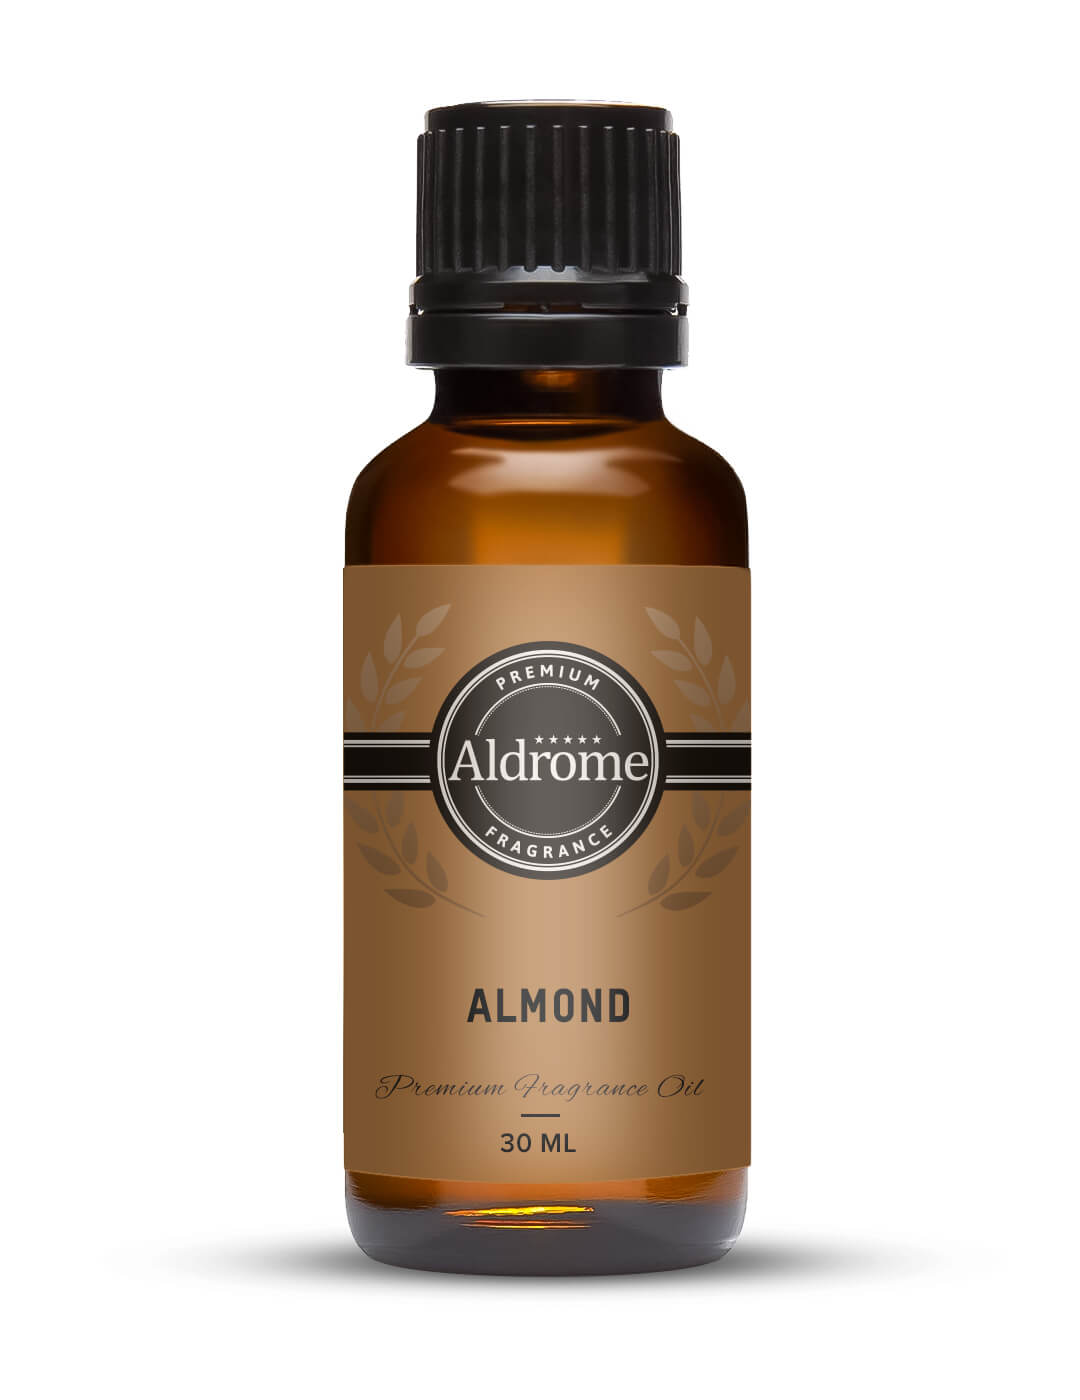 Buy Almond Fragrance Oil 30ml at Best price | Aldrome Premium Fragrance Oil